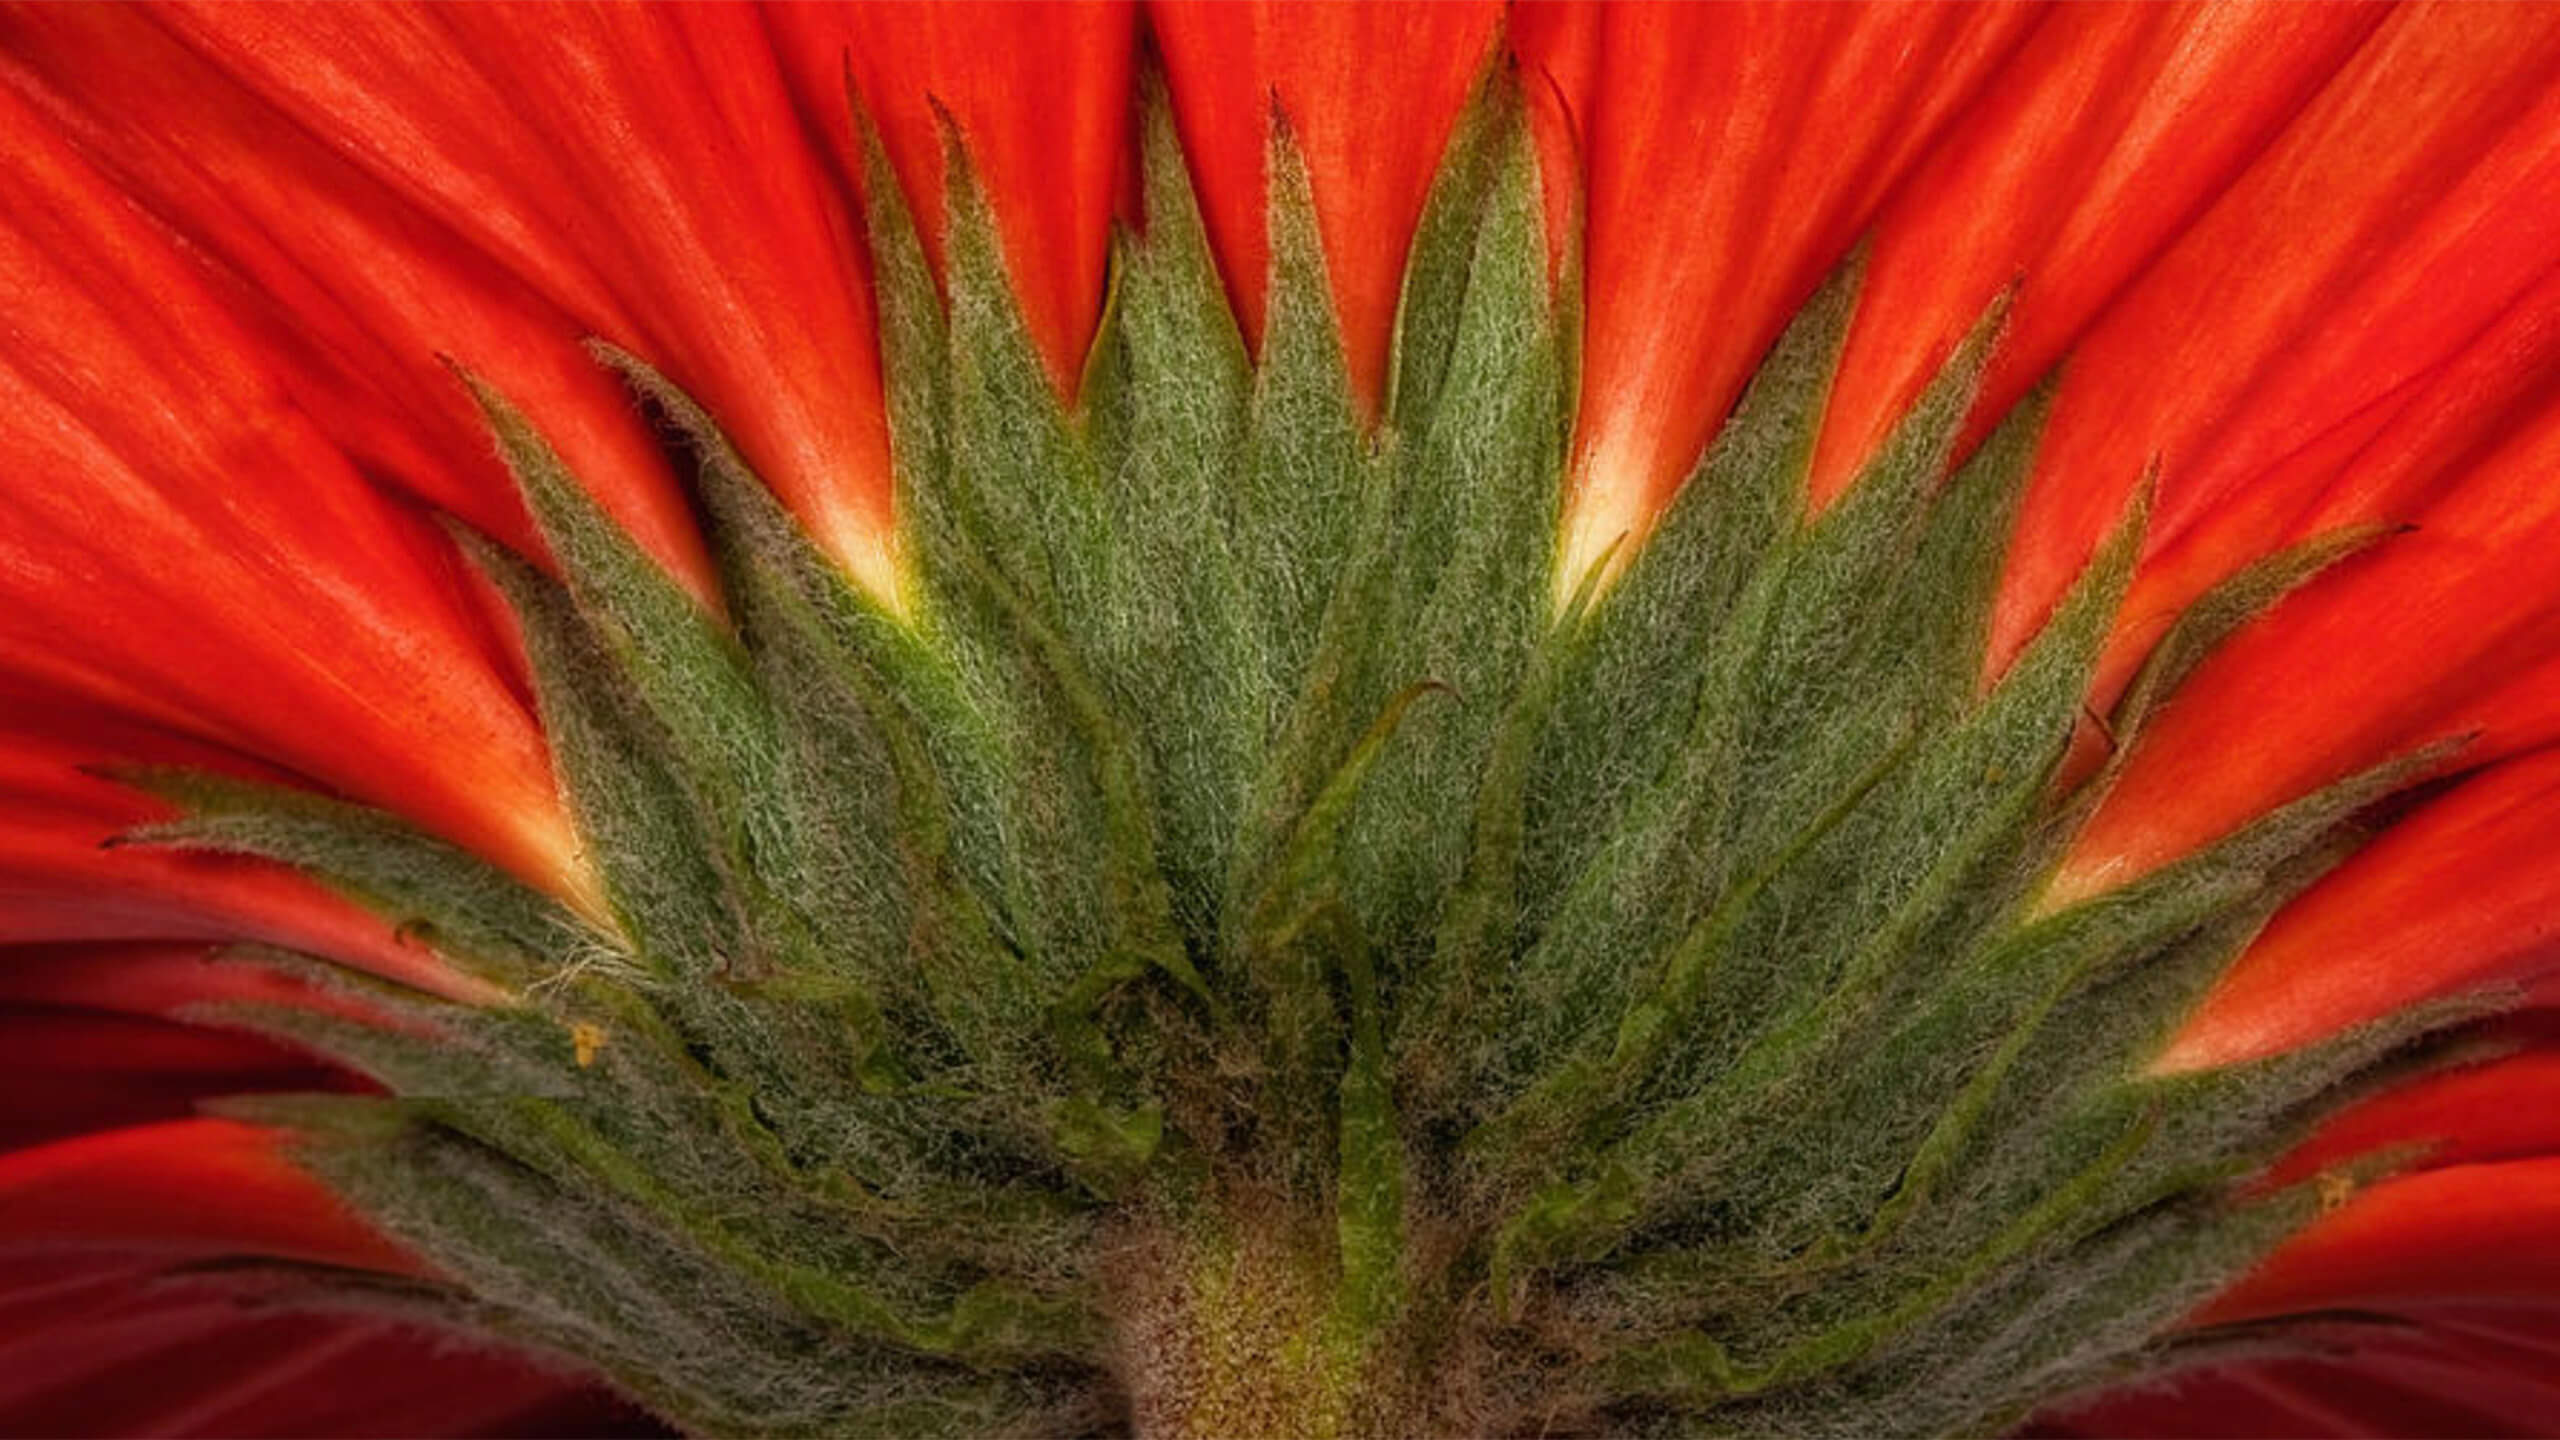 Screen-Shot-red-gerber-daisy-coates-2560p